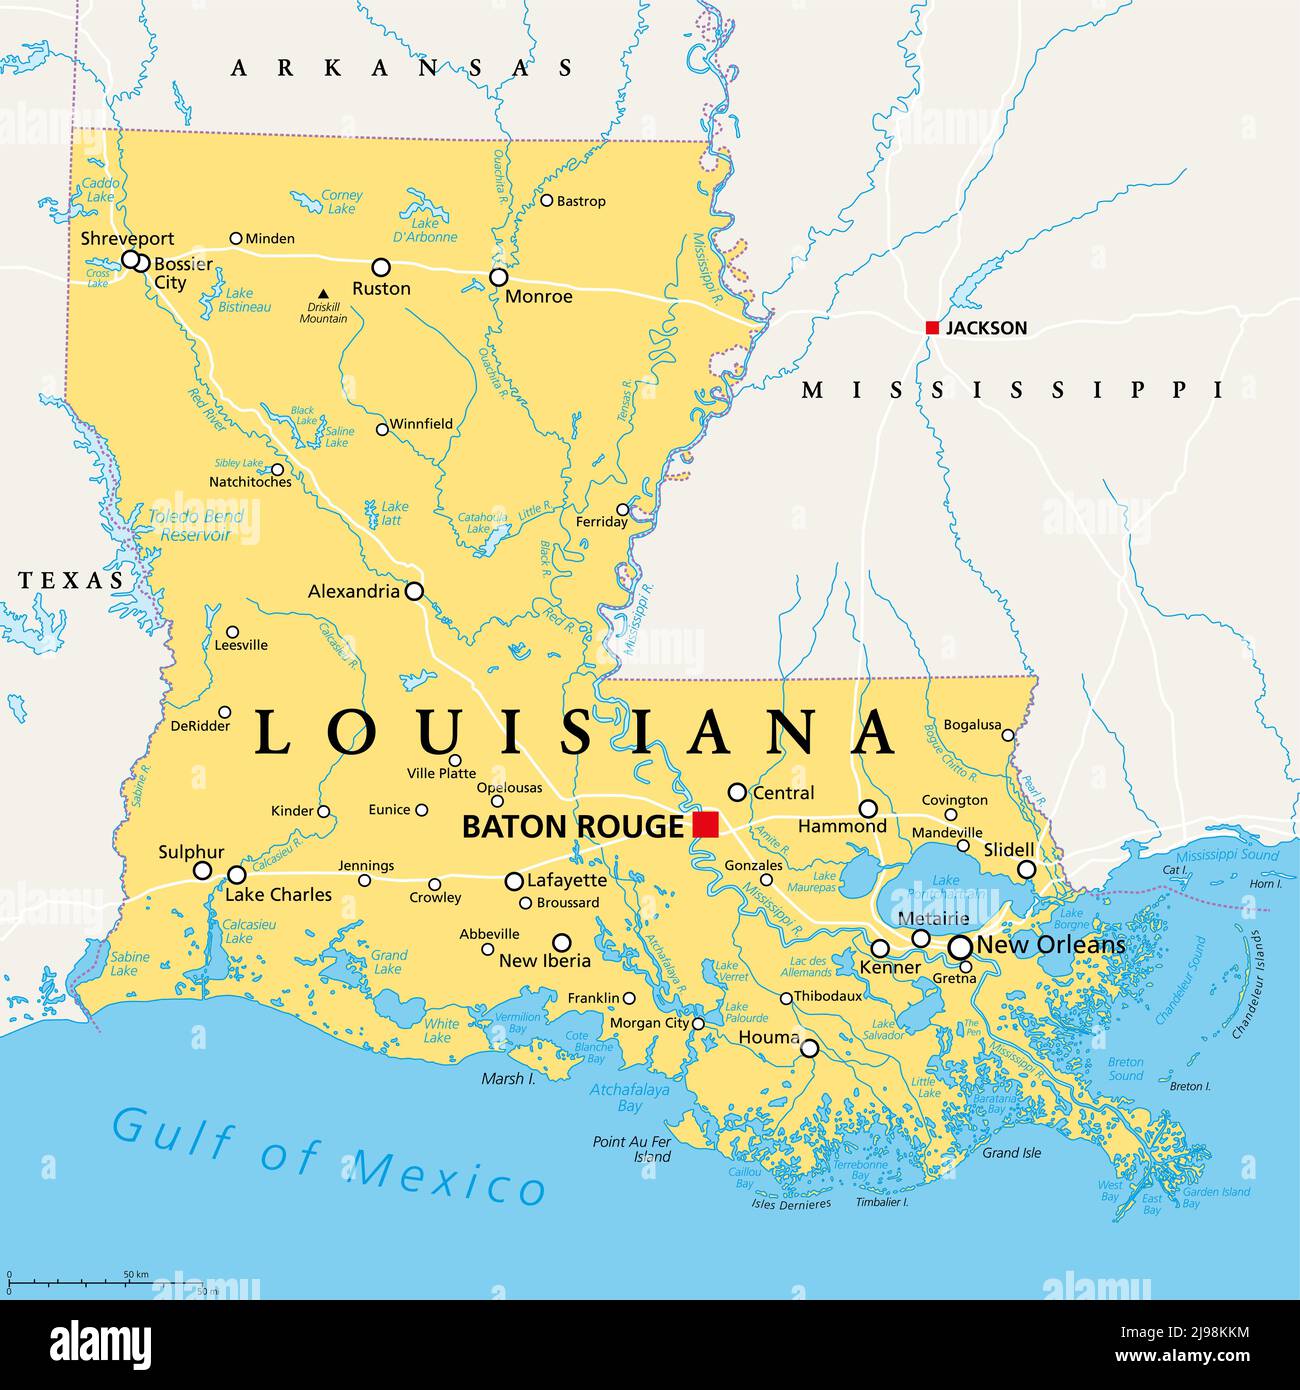 Louisiana, LA, mappa politica, con la capitale Baton Rouge e l'area metropolitana di New Orleans. Stato nelle regioni profonde del sud e del sud centrale degli Stati Uniti. Foto Stock